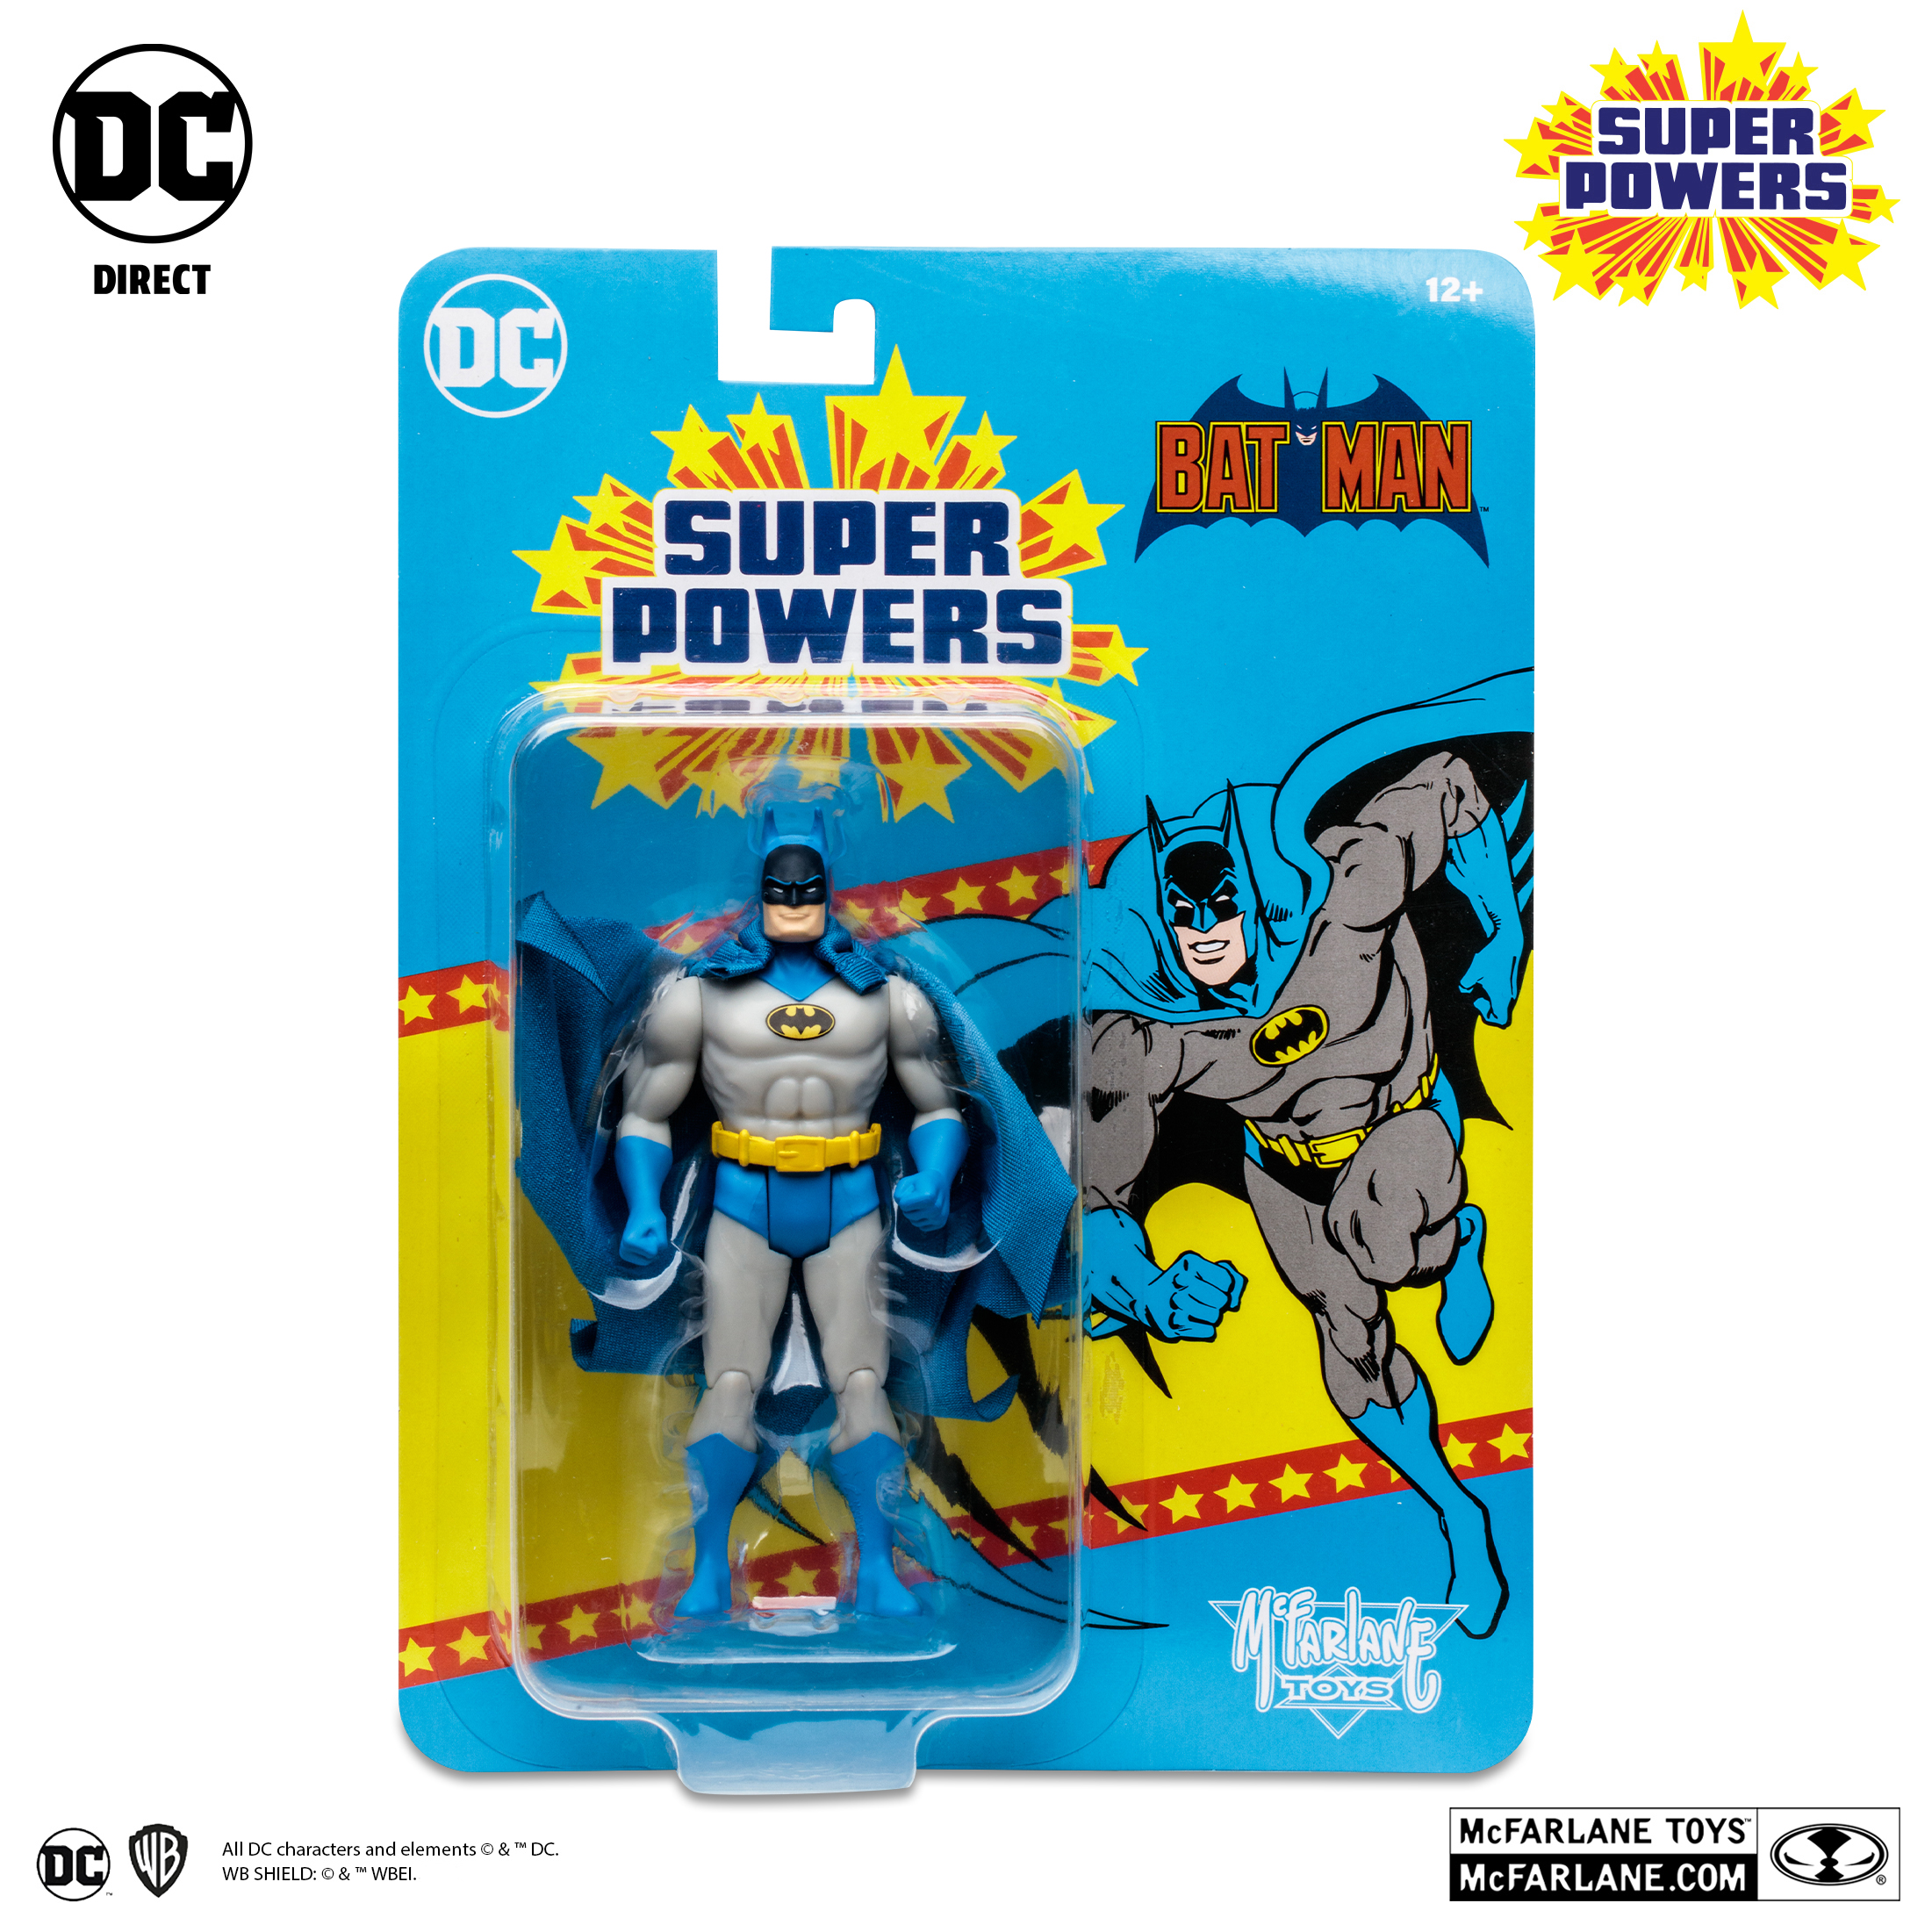 McFarlane Toys DC Super Powers Classic Detective Batman Action Figure